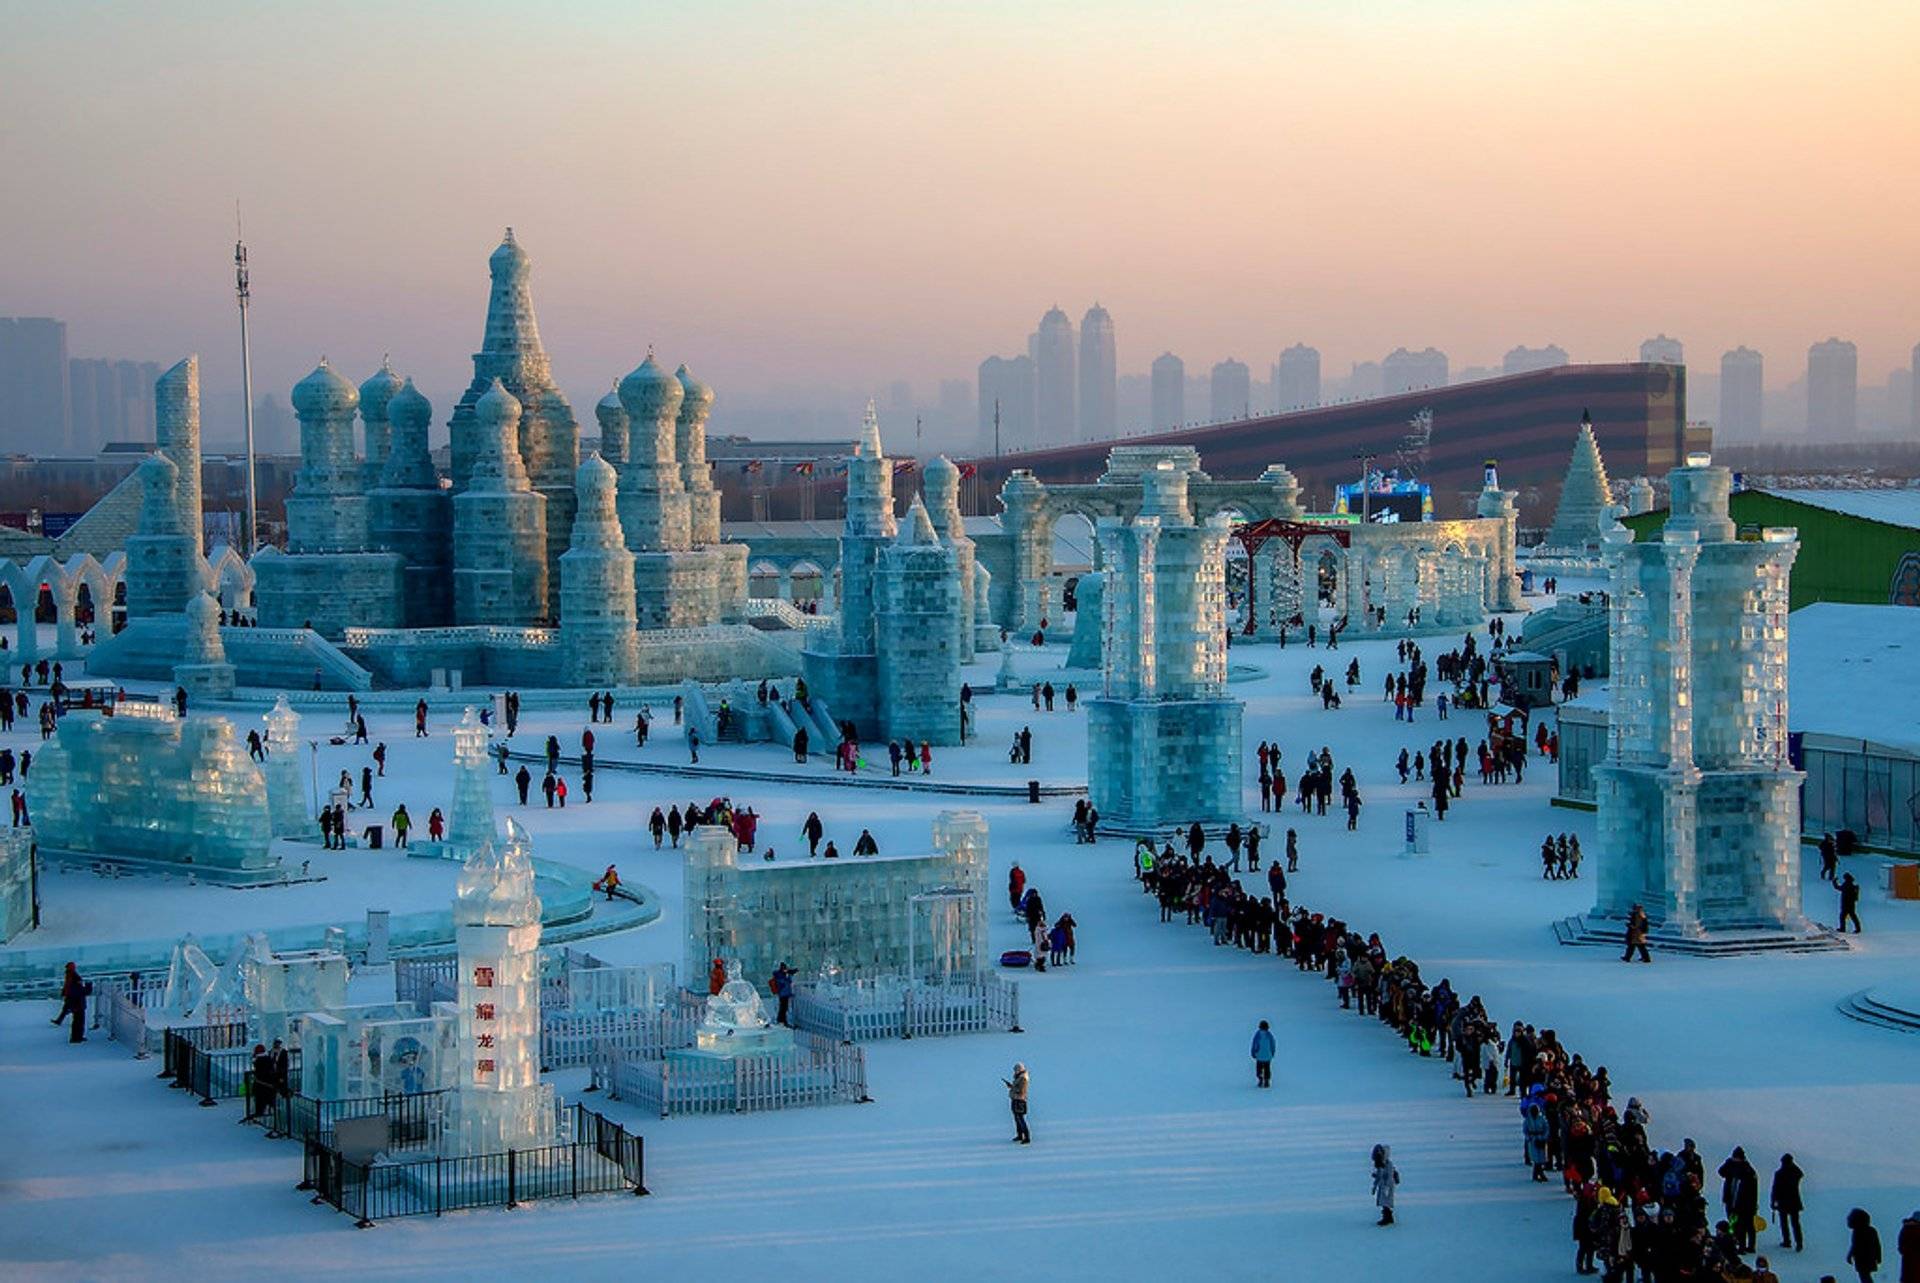 因冰雪文化成名的城市最低气温能到零下40多度游客却络绎不绝